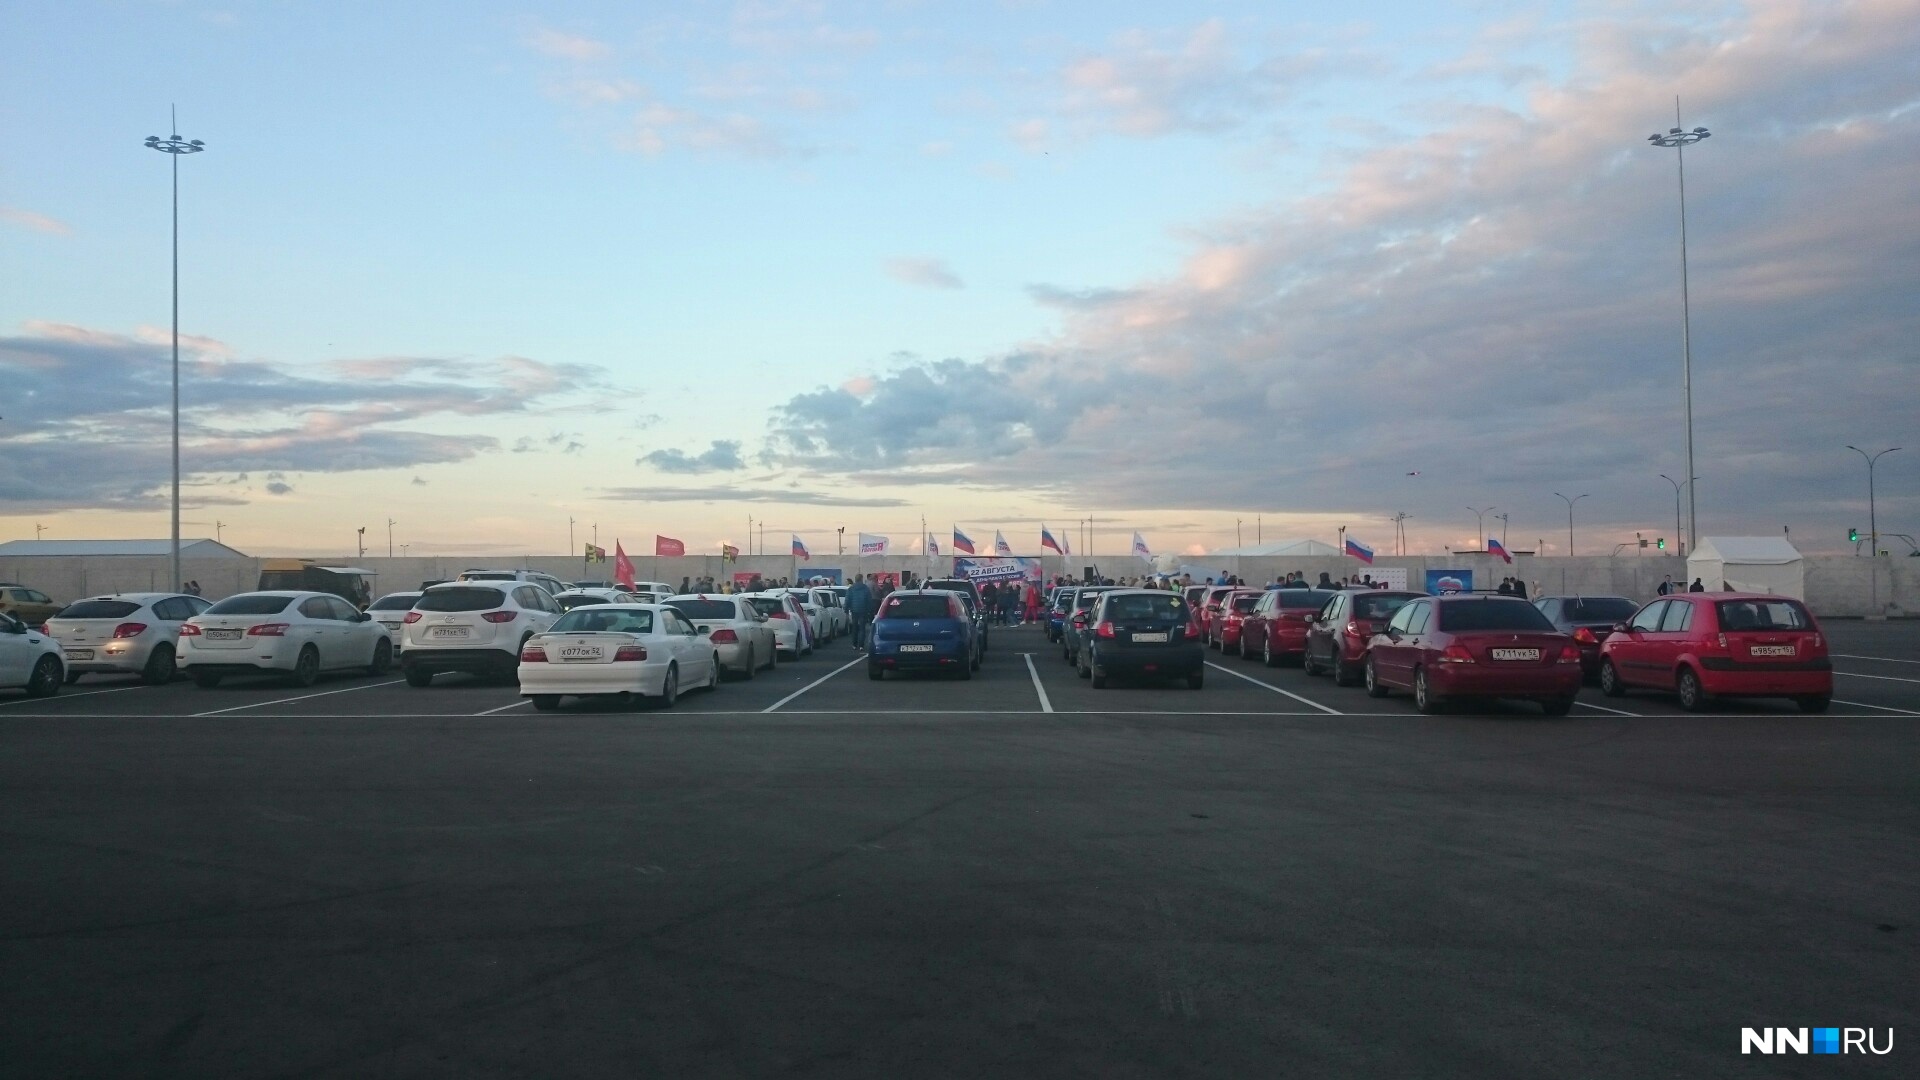 Во славу флага русского: нижегородцы на автомобилях выстроились по цветам триколора